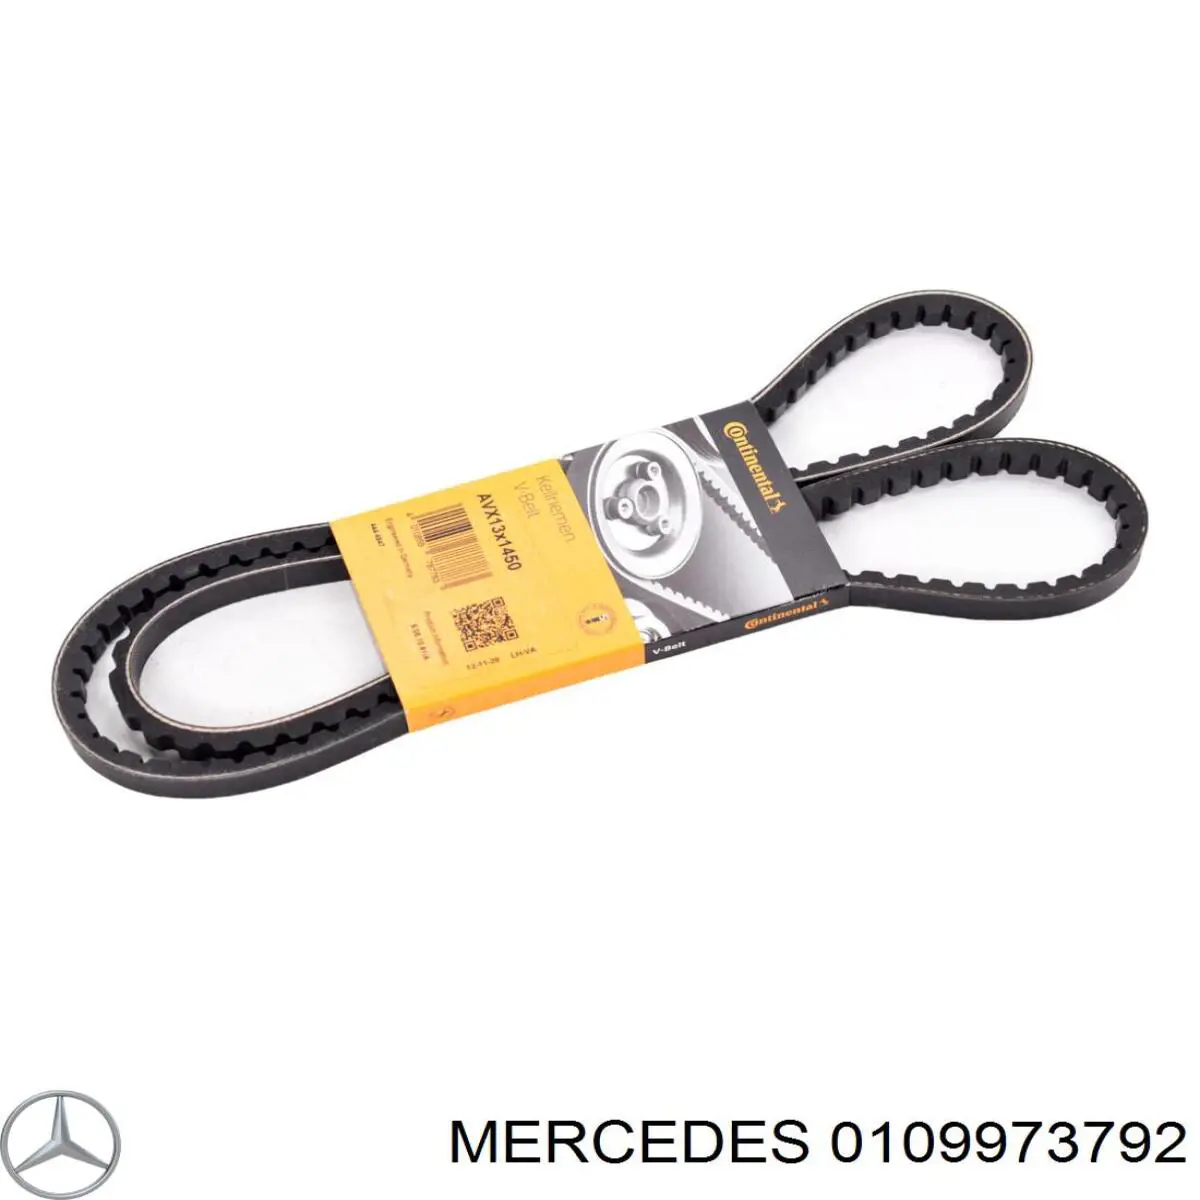 0109973792 Mercedes correa trapezoidal